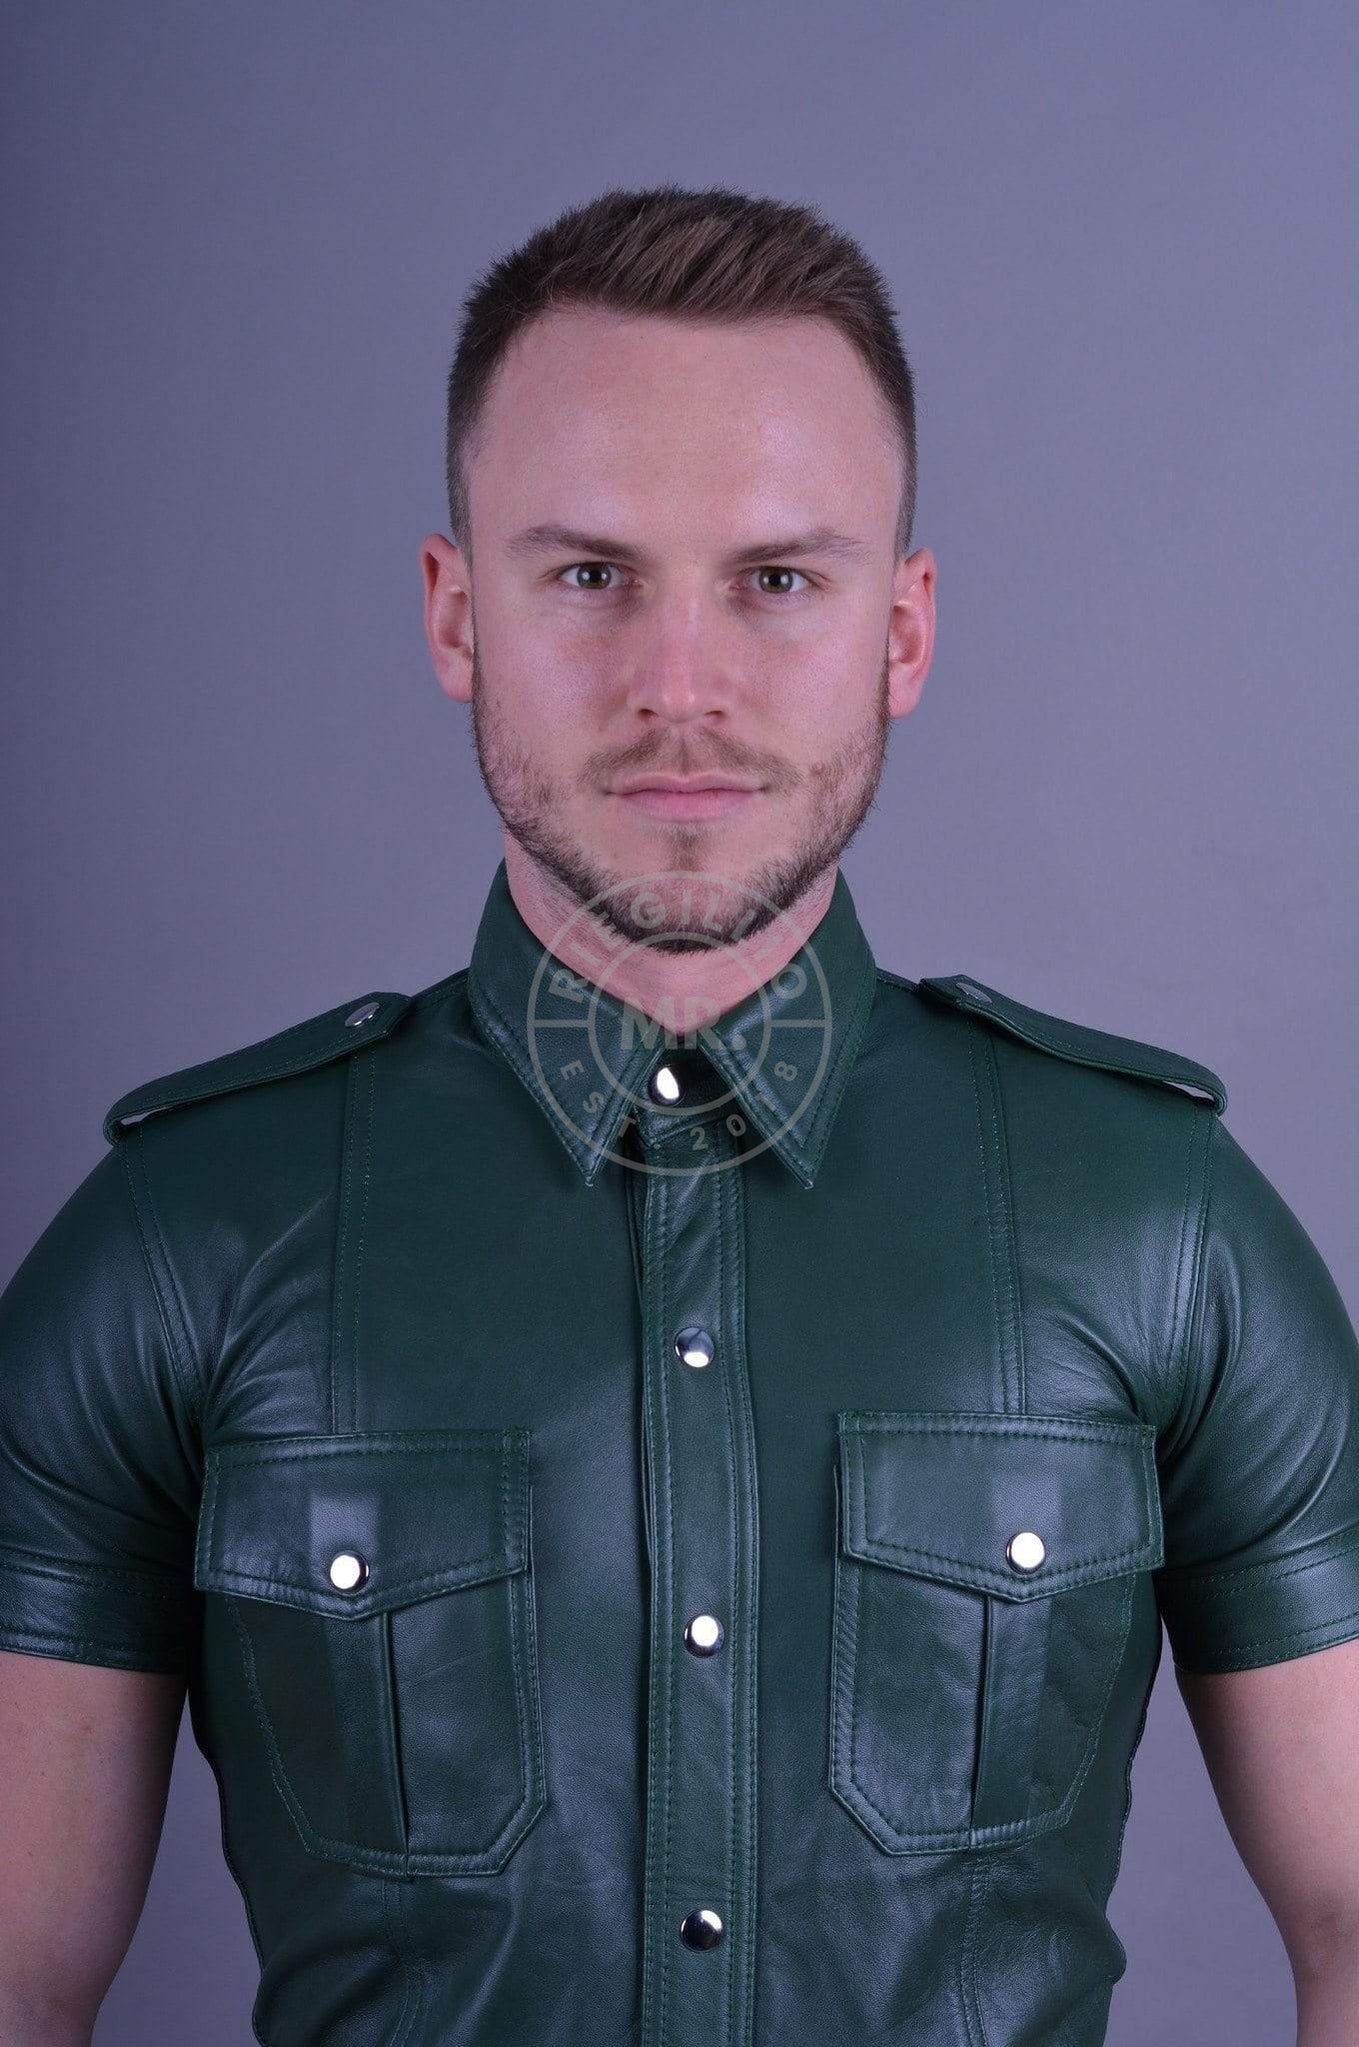 Dark Green Leather Shirt at MR. Riegillio